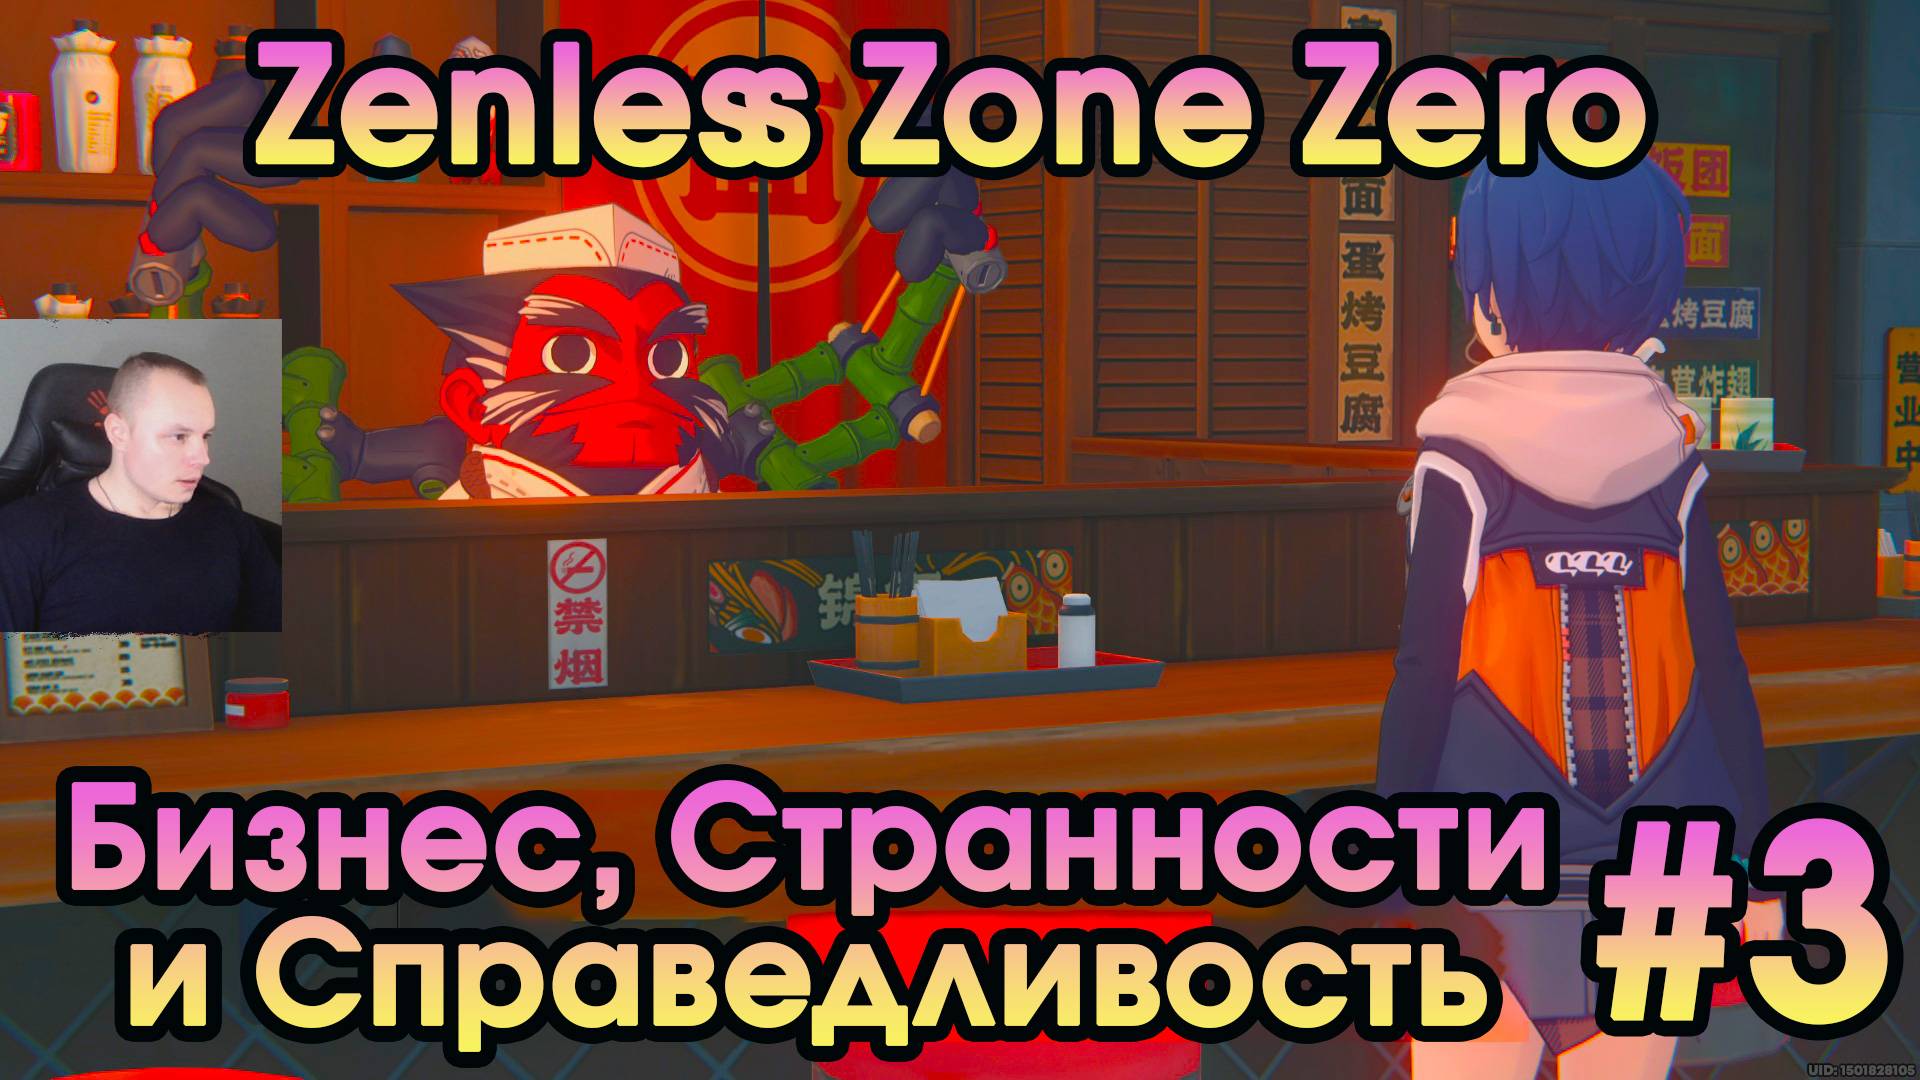 Zenless Zone Zero ➤ Заказы генерала Чопа и Сьюзи ➤ Пролог: Бизнес, Странности и Справедливость ➤ ZZZ